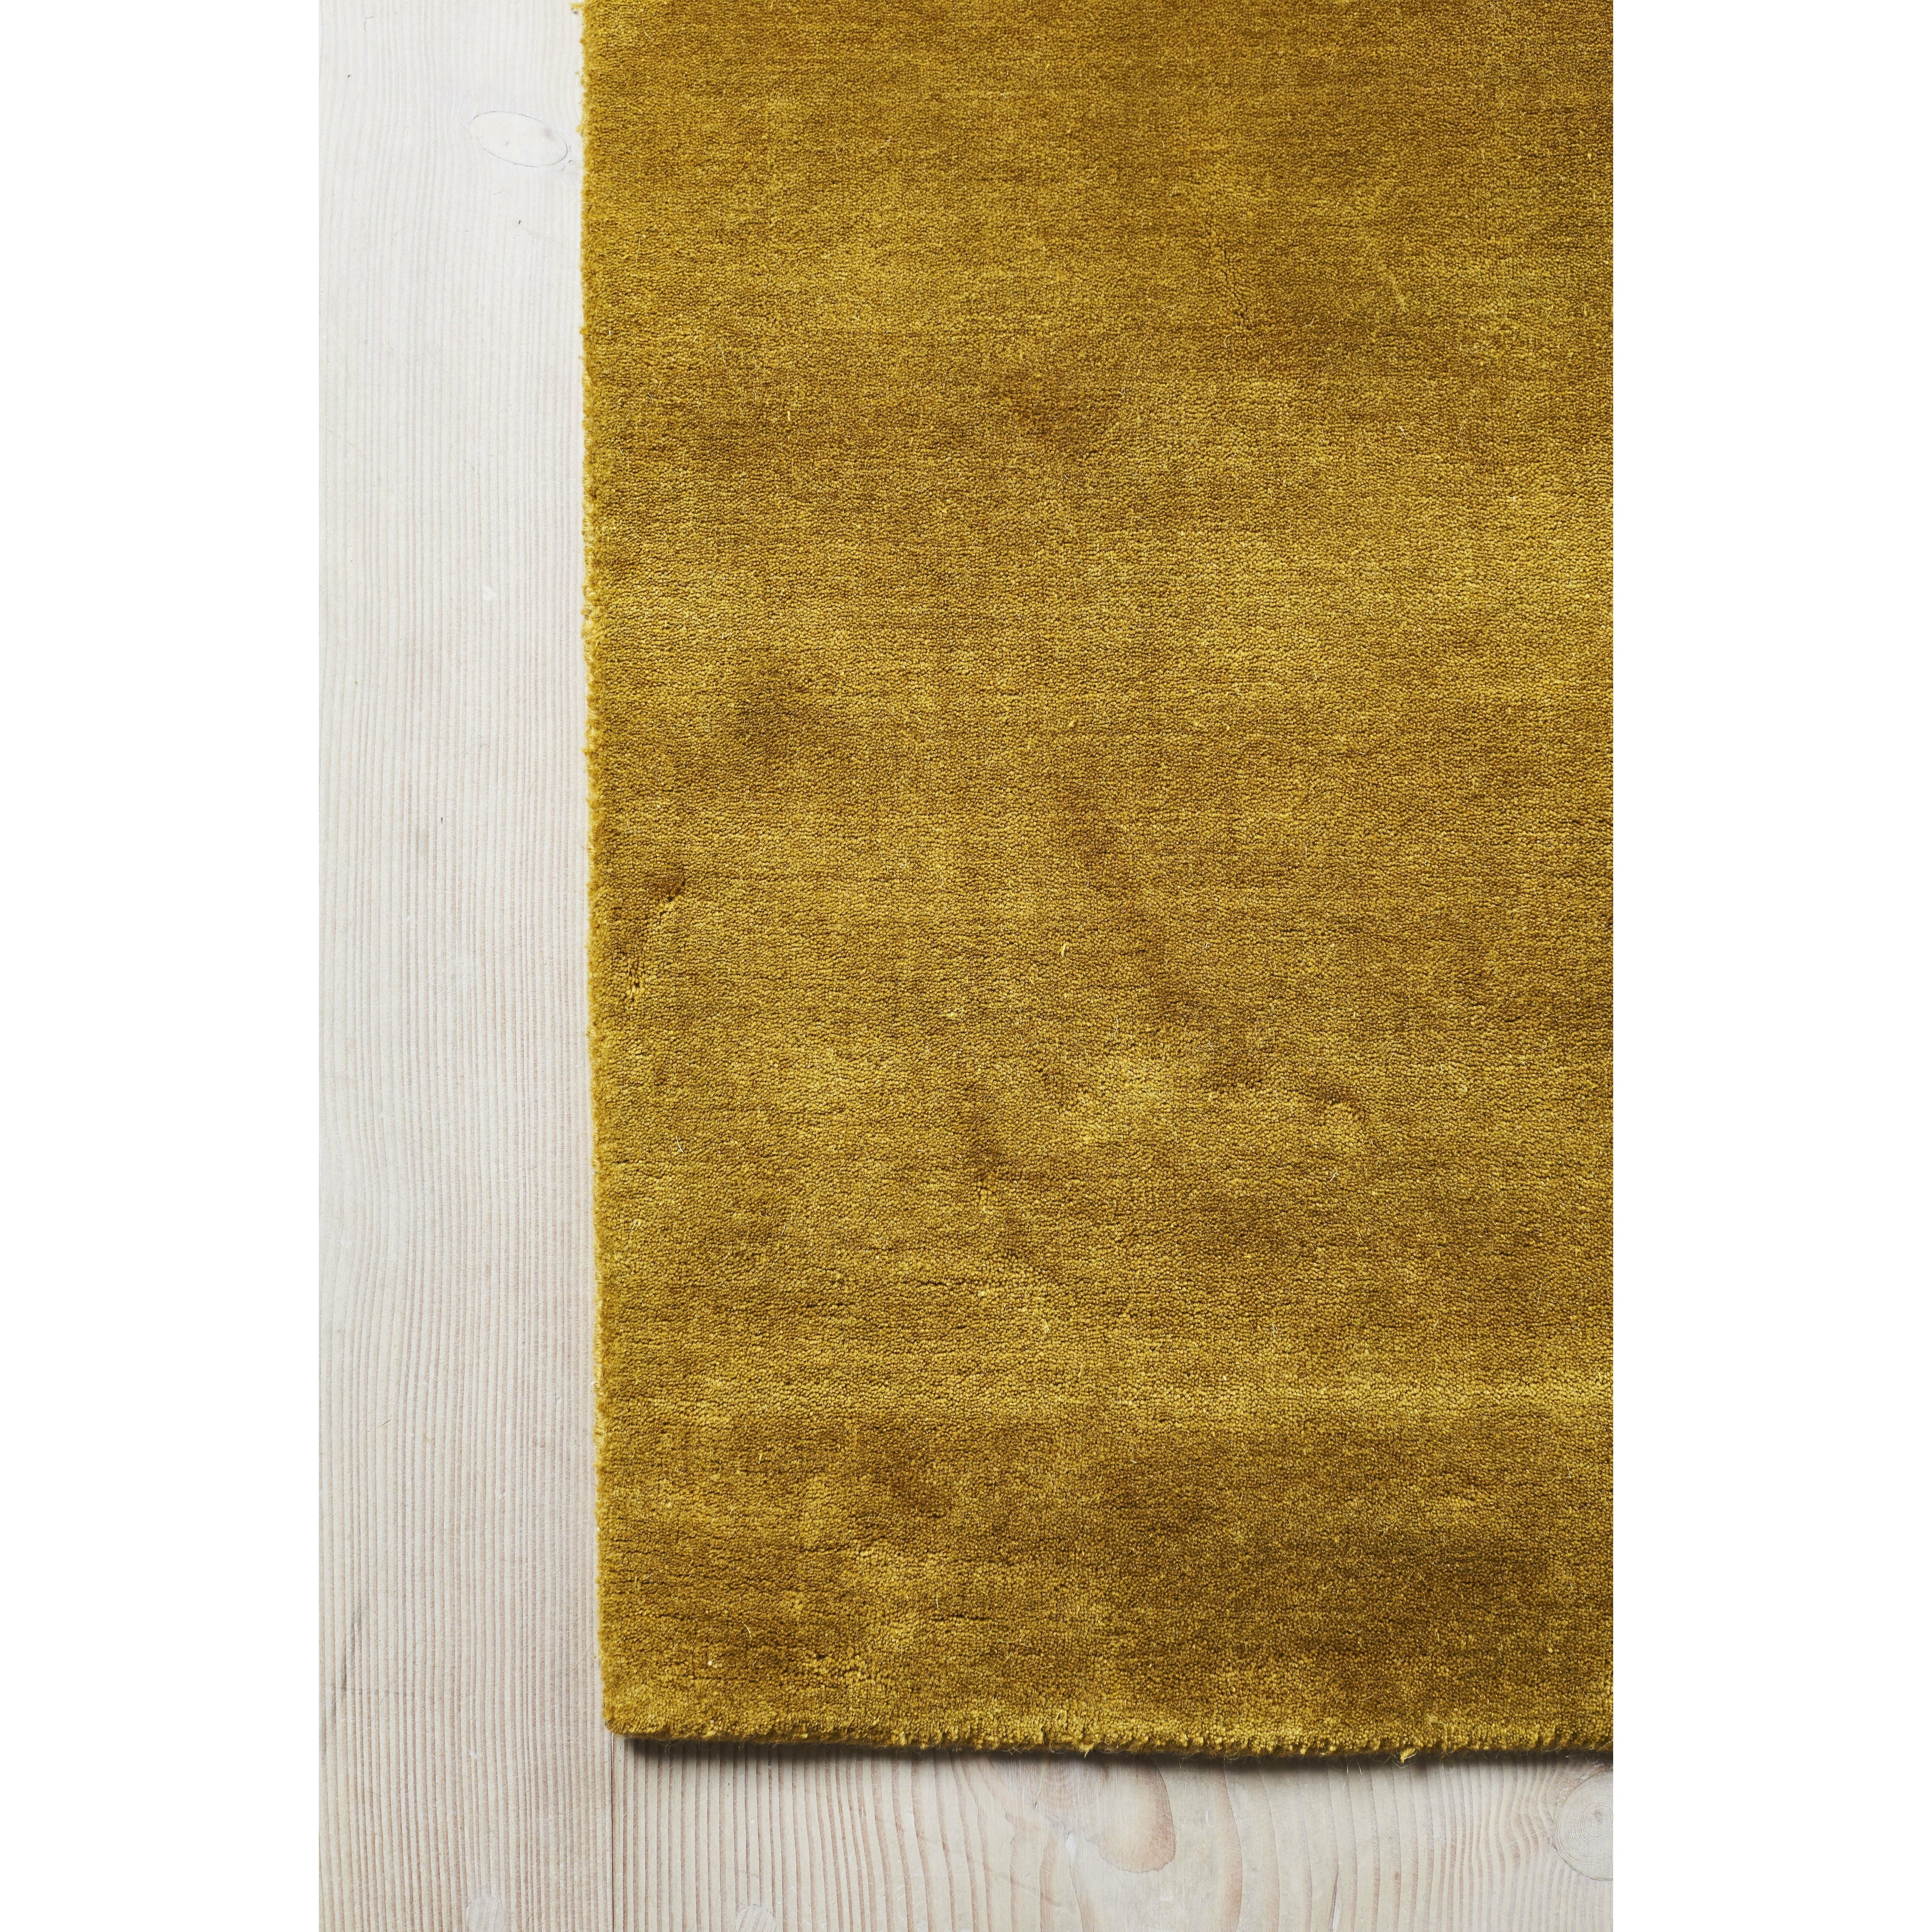 Massimo Erde Bambusteppich Chinesisch Gelb, 170x240 Cm